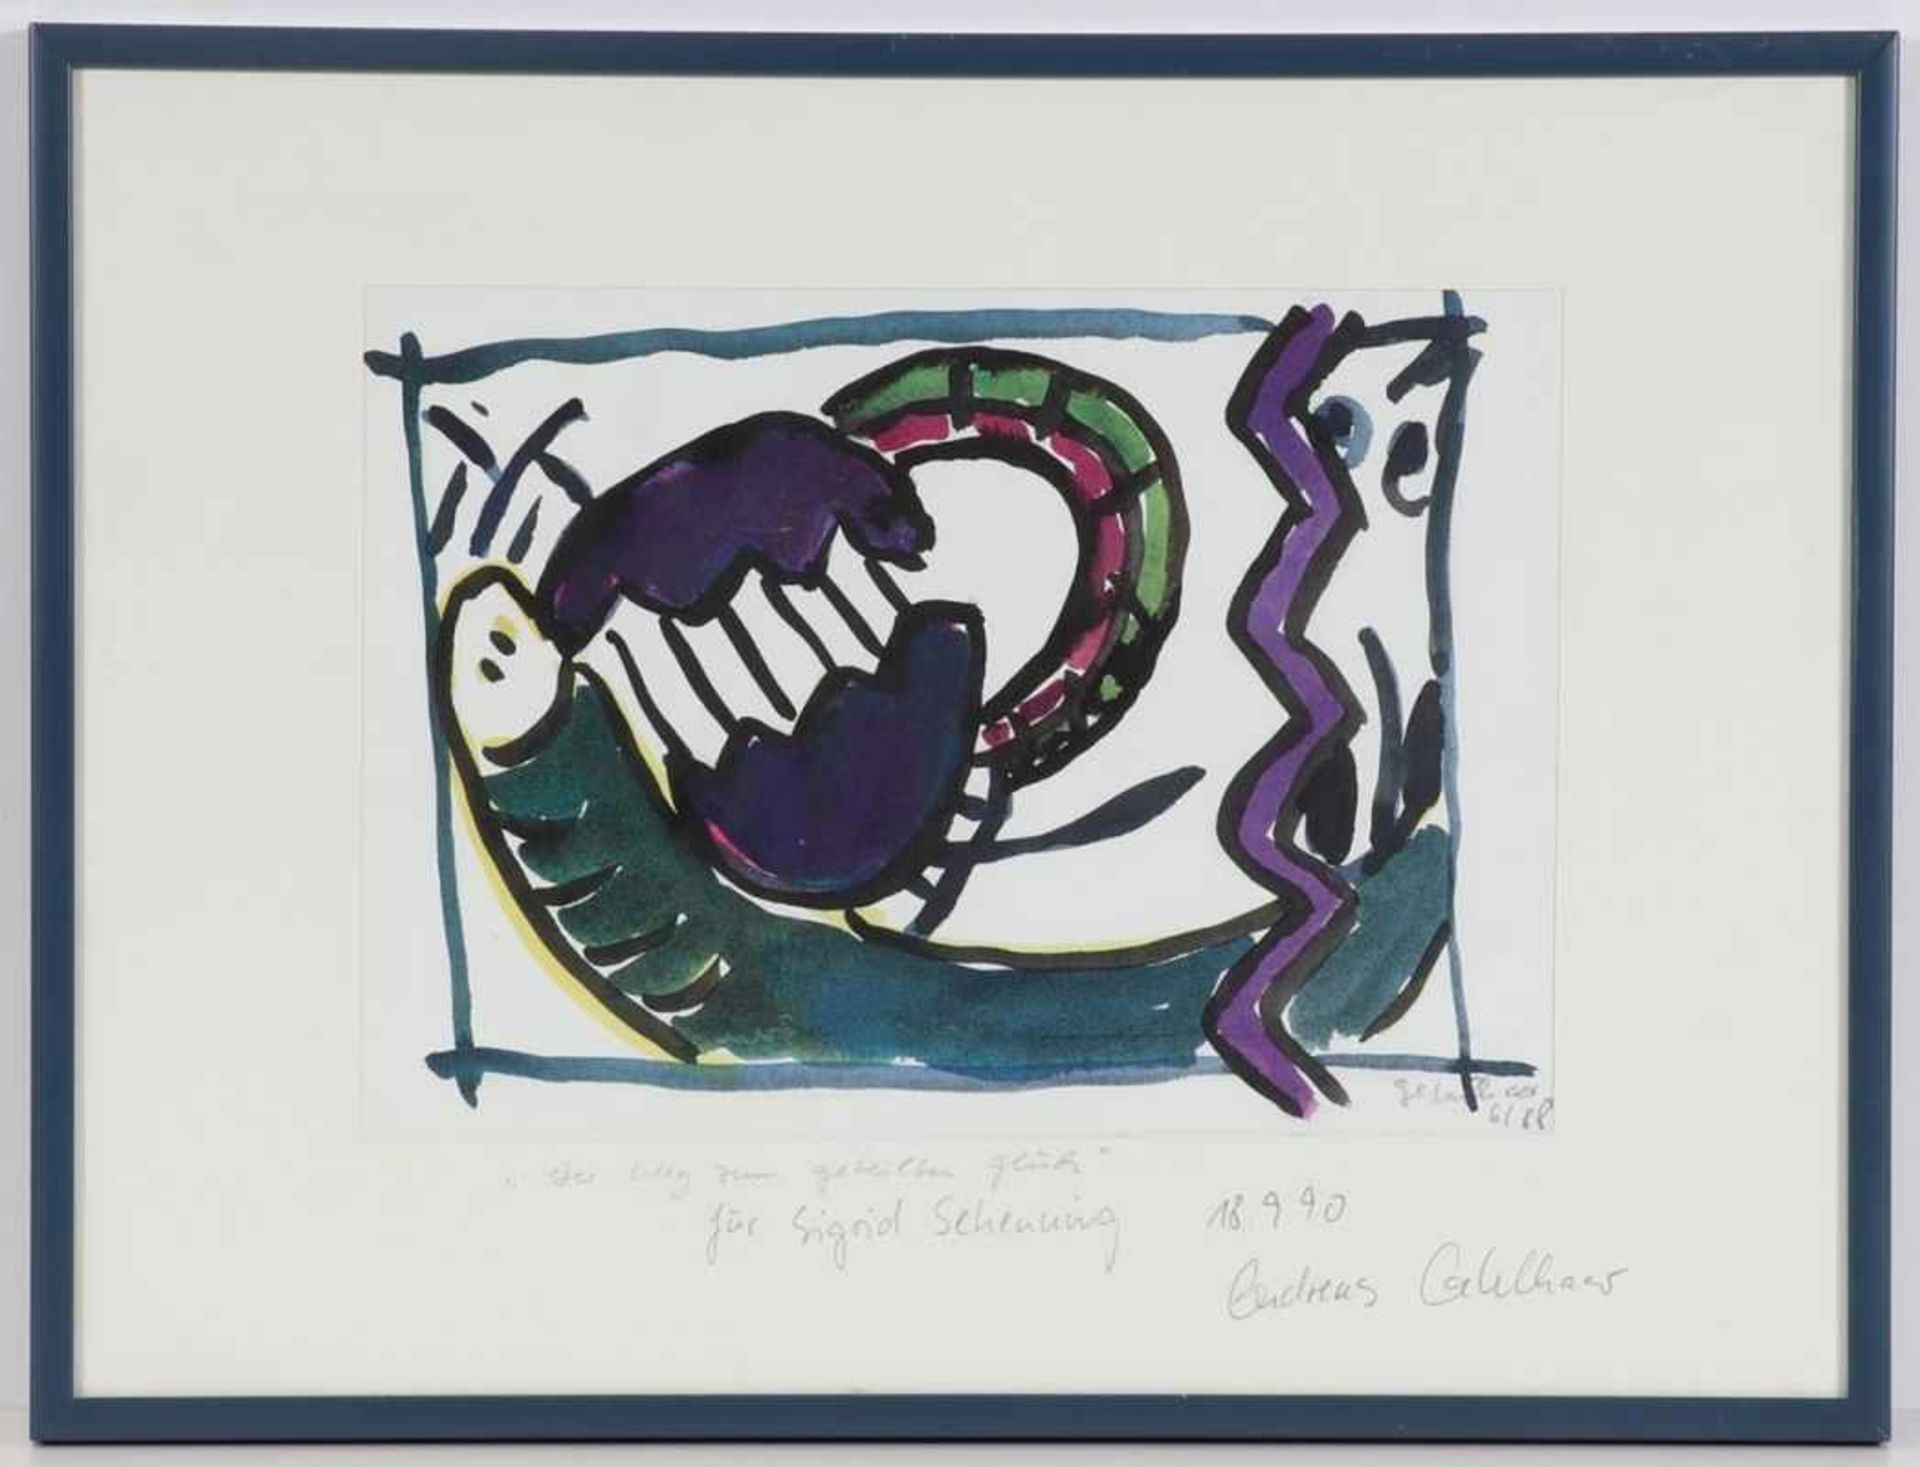 Andreas Gehlhaar1960 Gelsenkirchen - "Der Weg zum geteilten Glück" - Aquarell/Papier. 18,6 x 26,5 cm